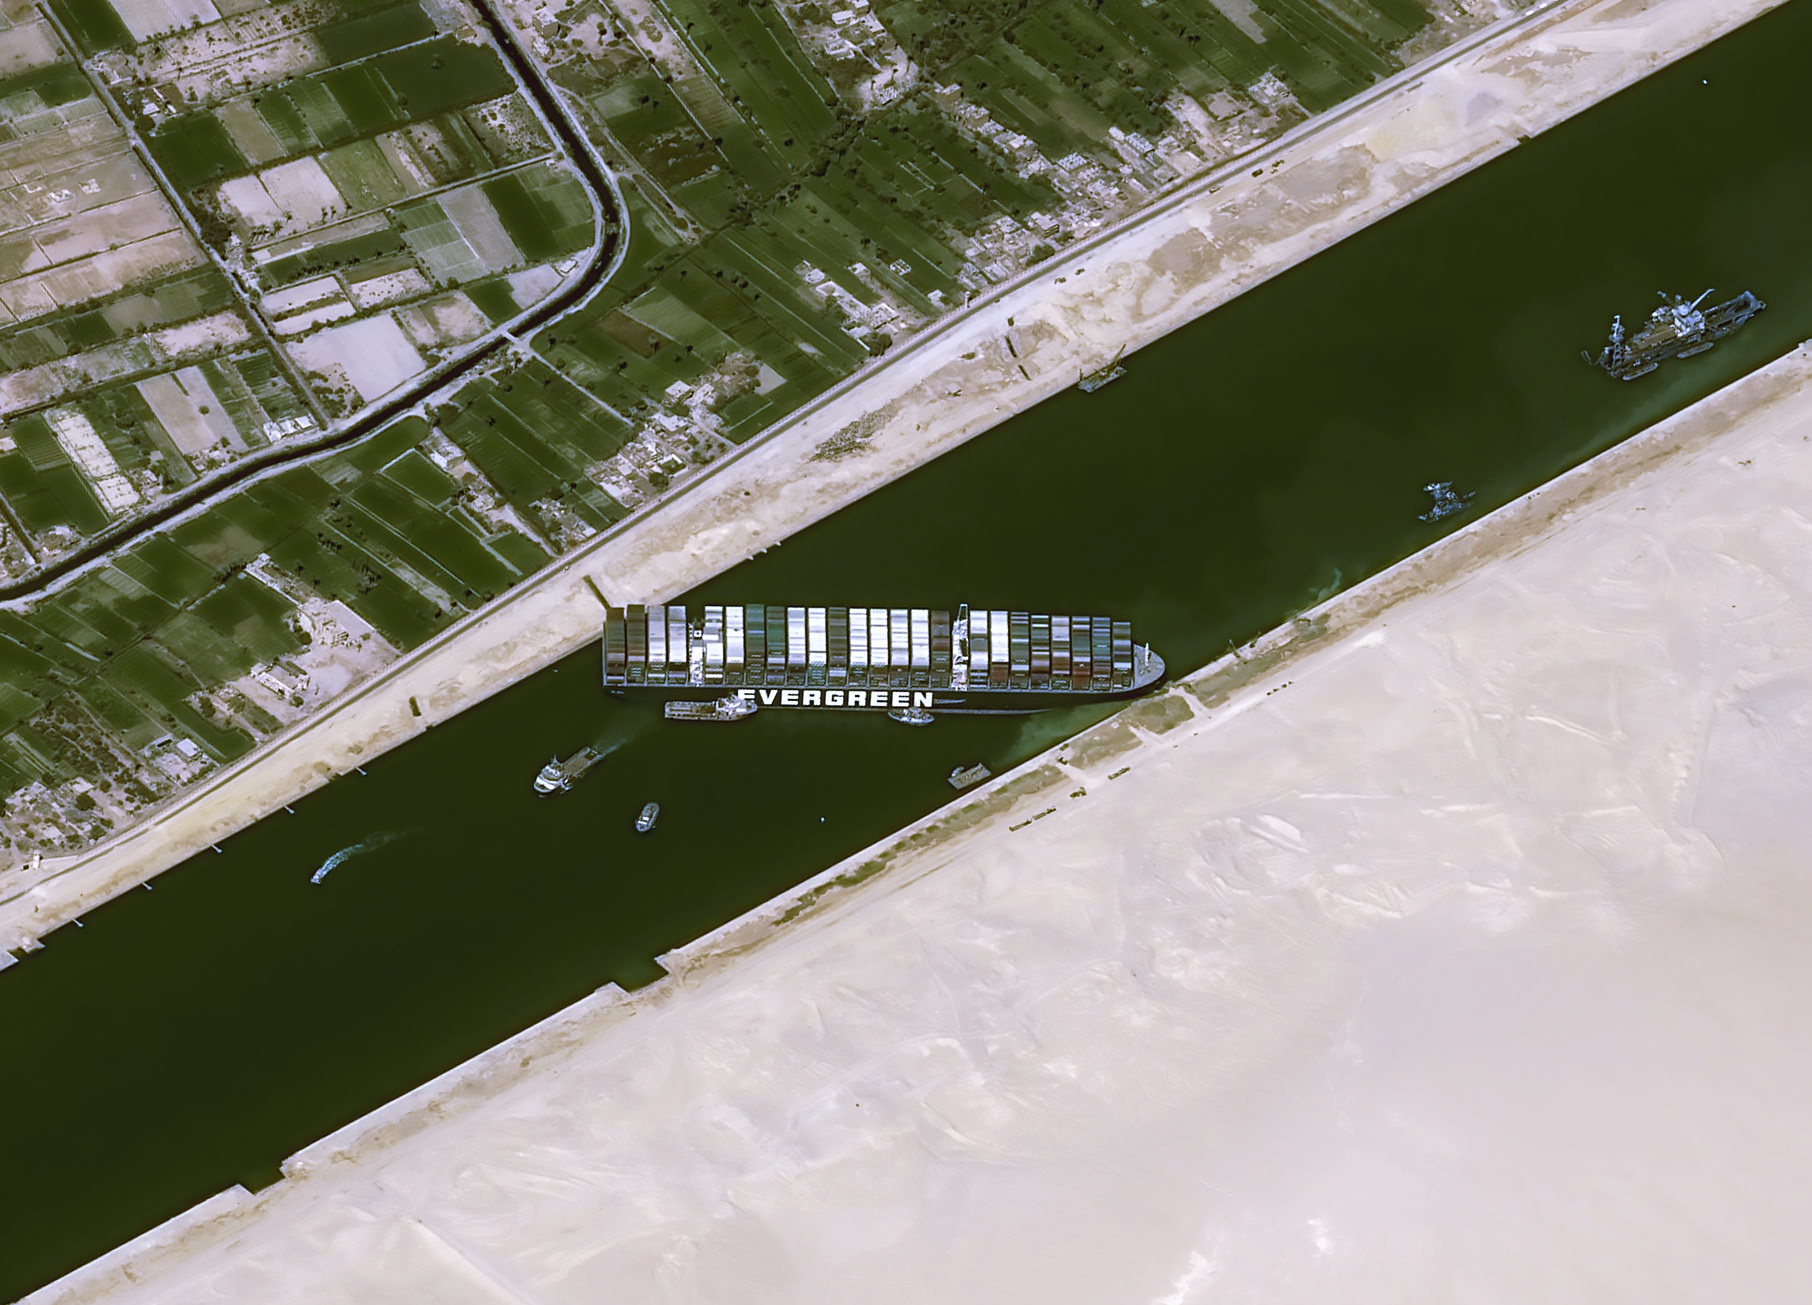 苏伊士运河仍有61艘船排队 有望3日全部通过-侨报网